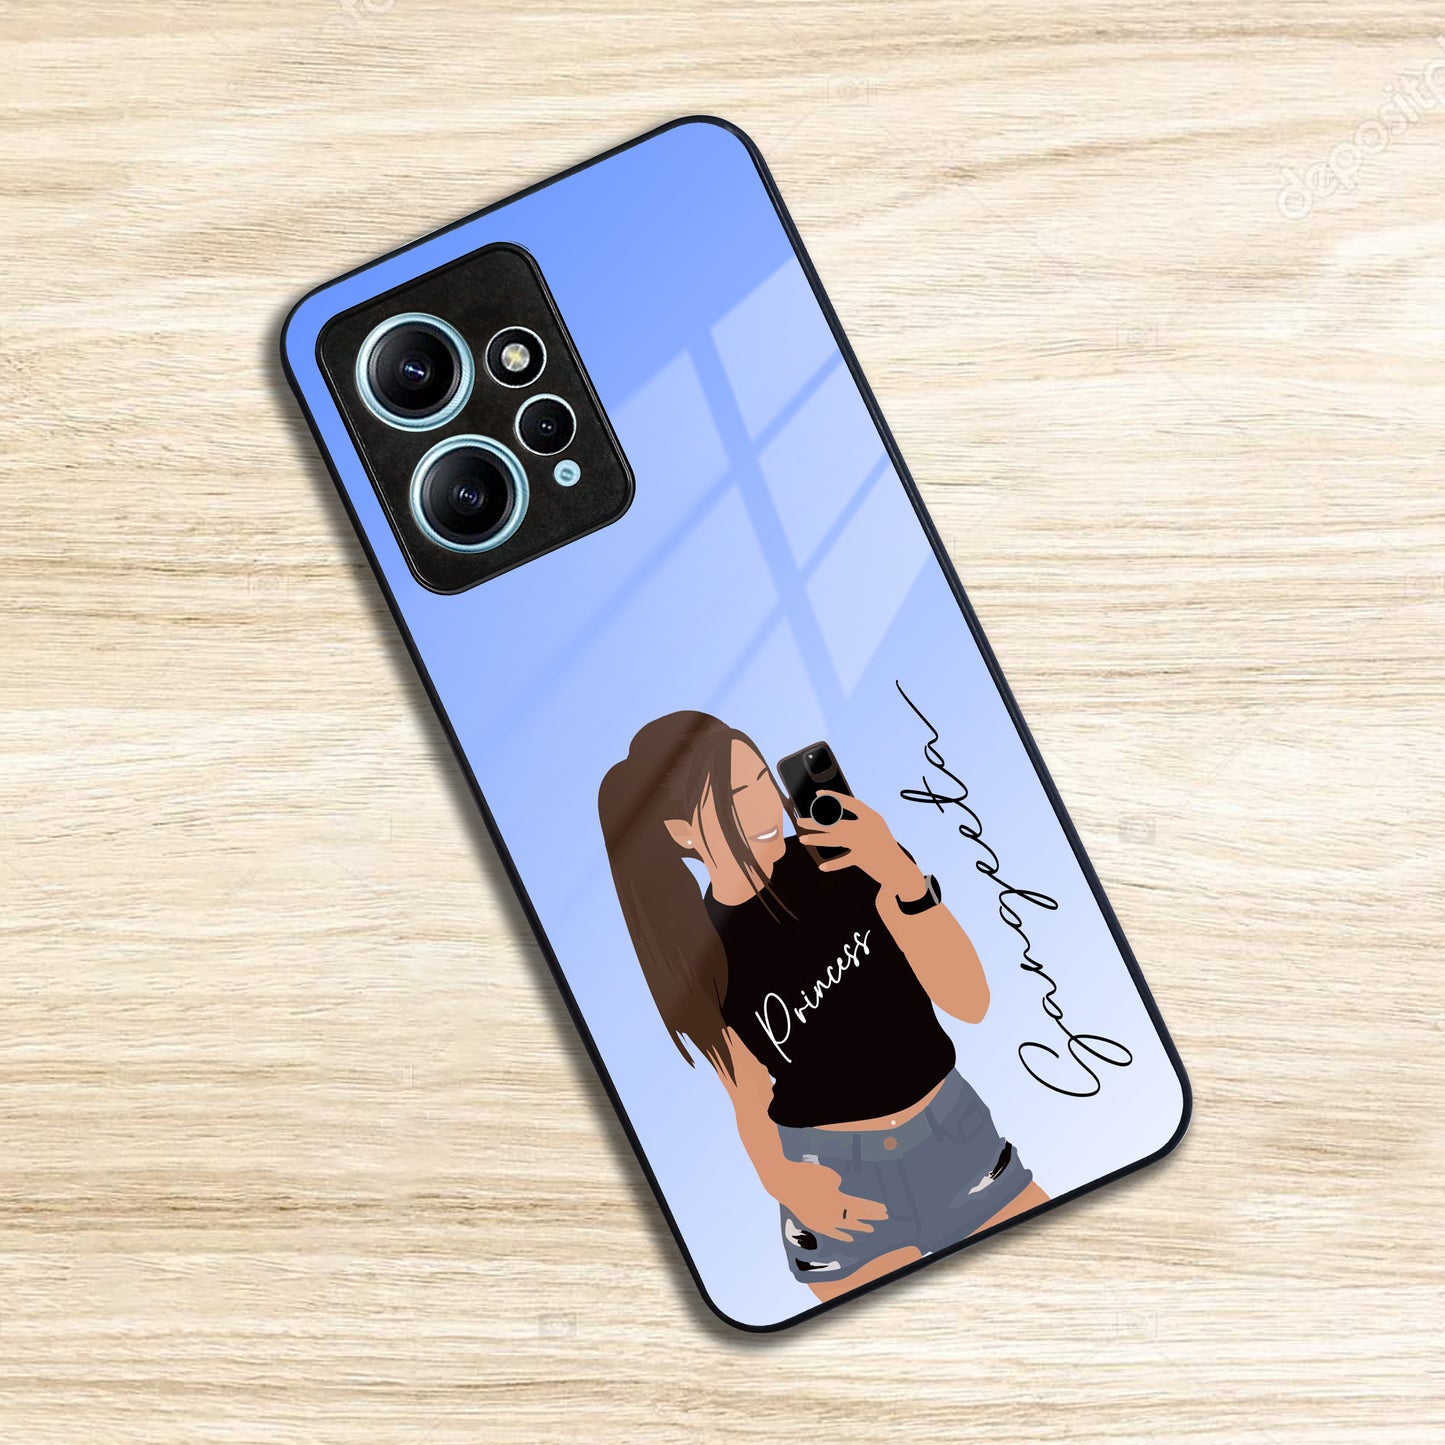 Mobile Girl Glass Case Cover For Redmi/Xiaomi